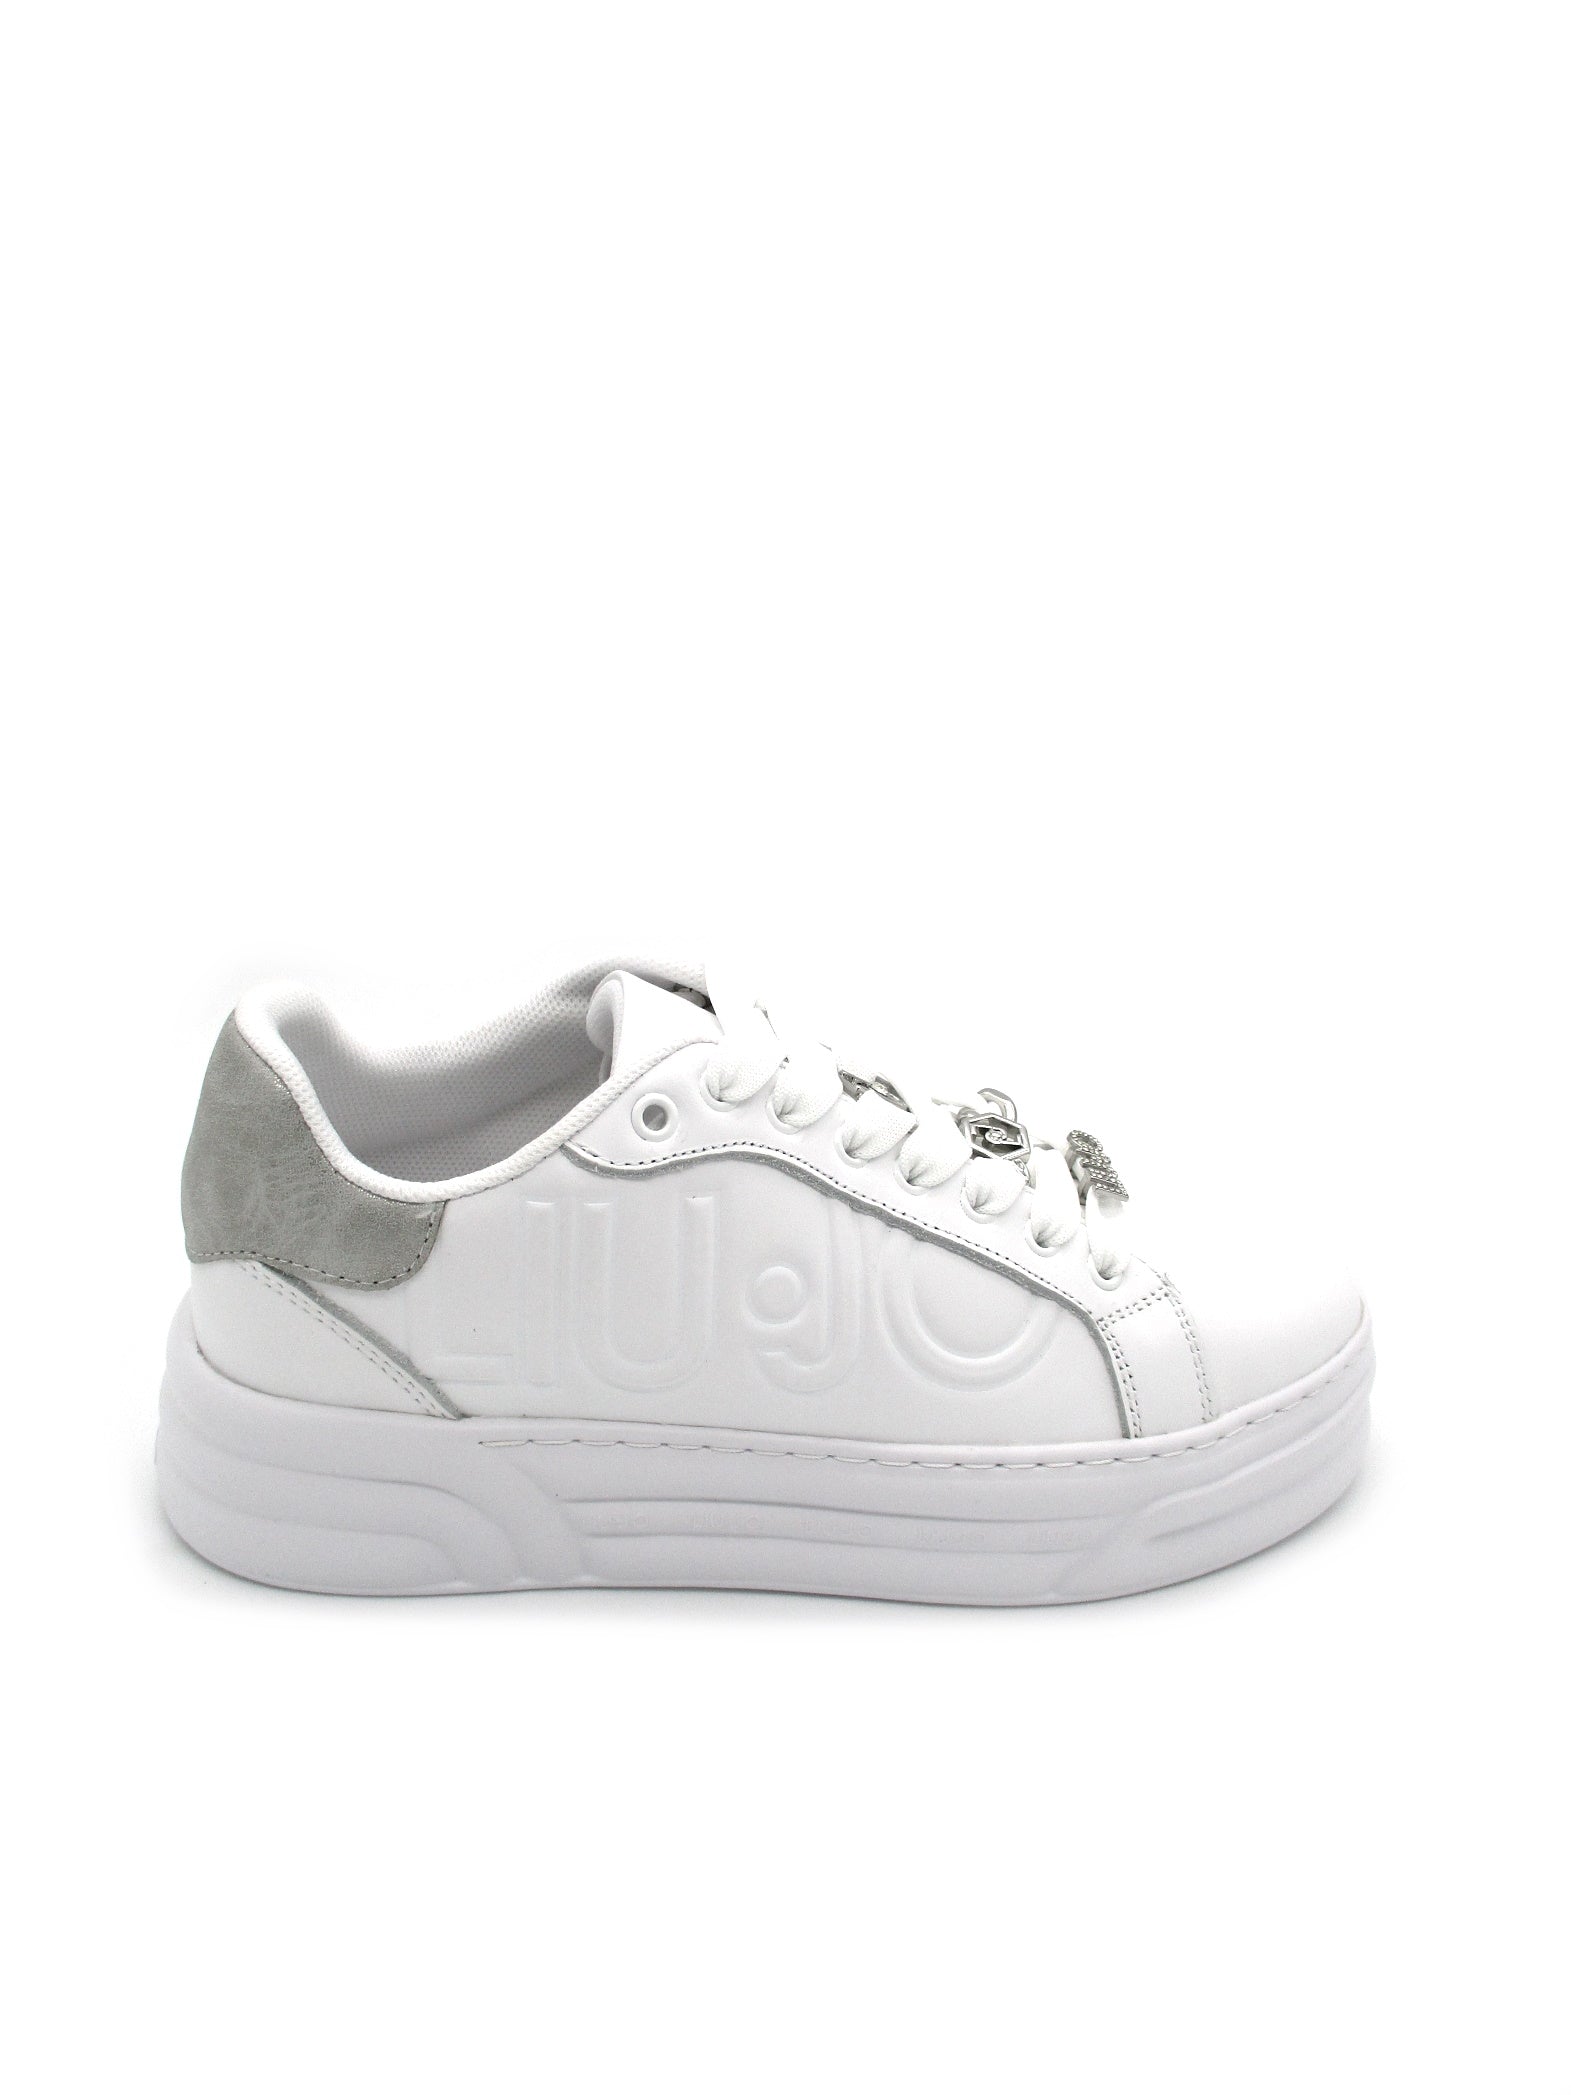 Sneaker pelle LIU JO Cleo 09 White